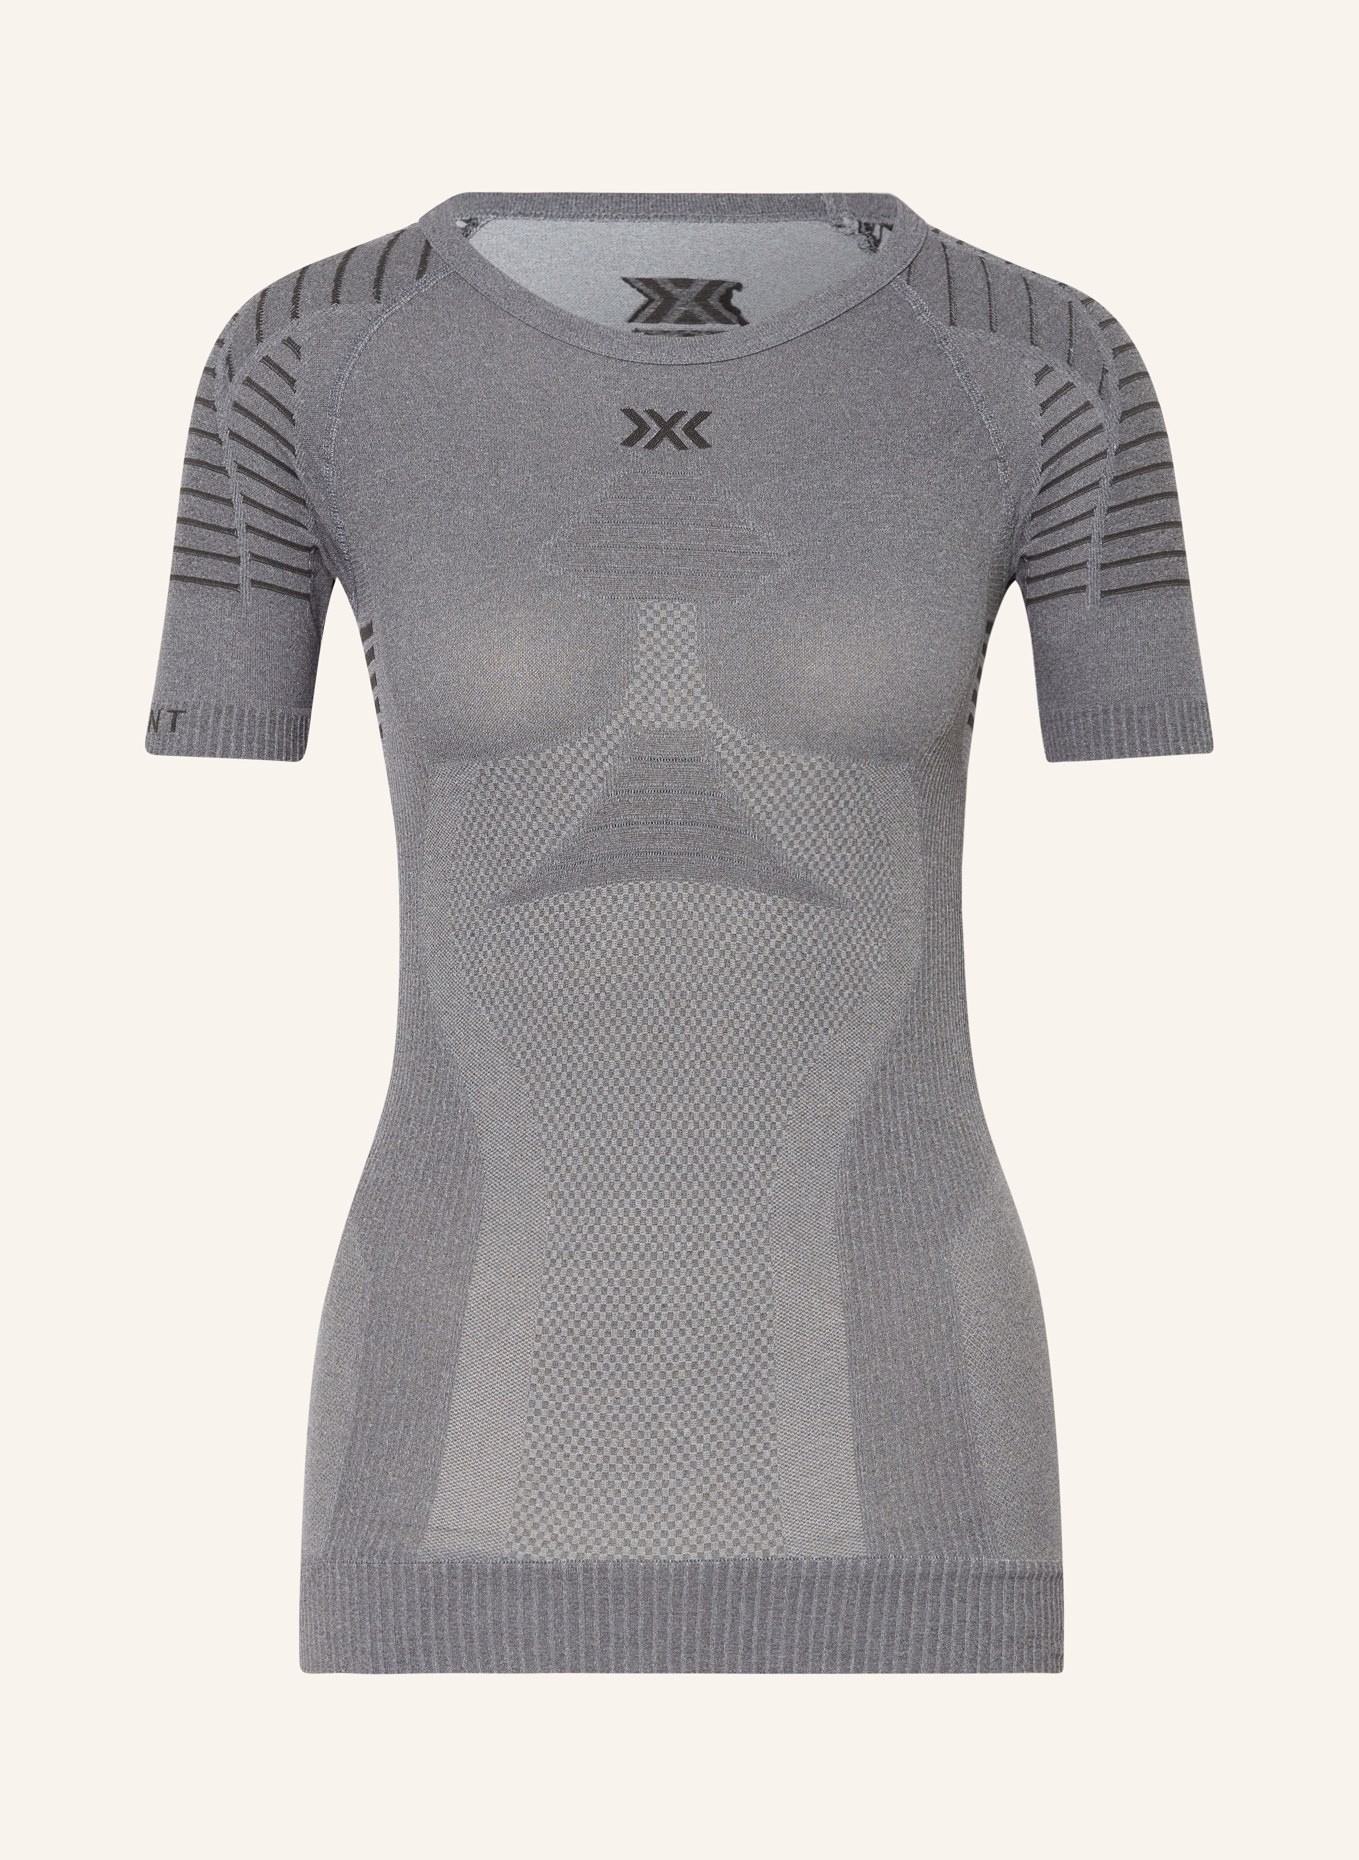 X-BIONIC Funktionswäsche-Shirt X-BIONIC® INVENT 4.0, Farbe: GRAU (Bild 1)